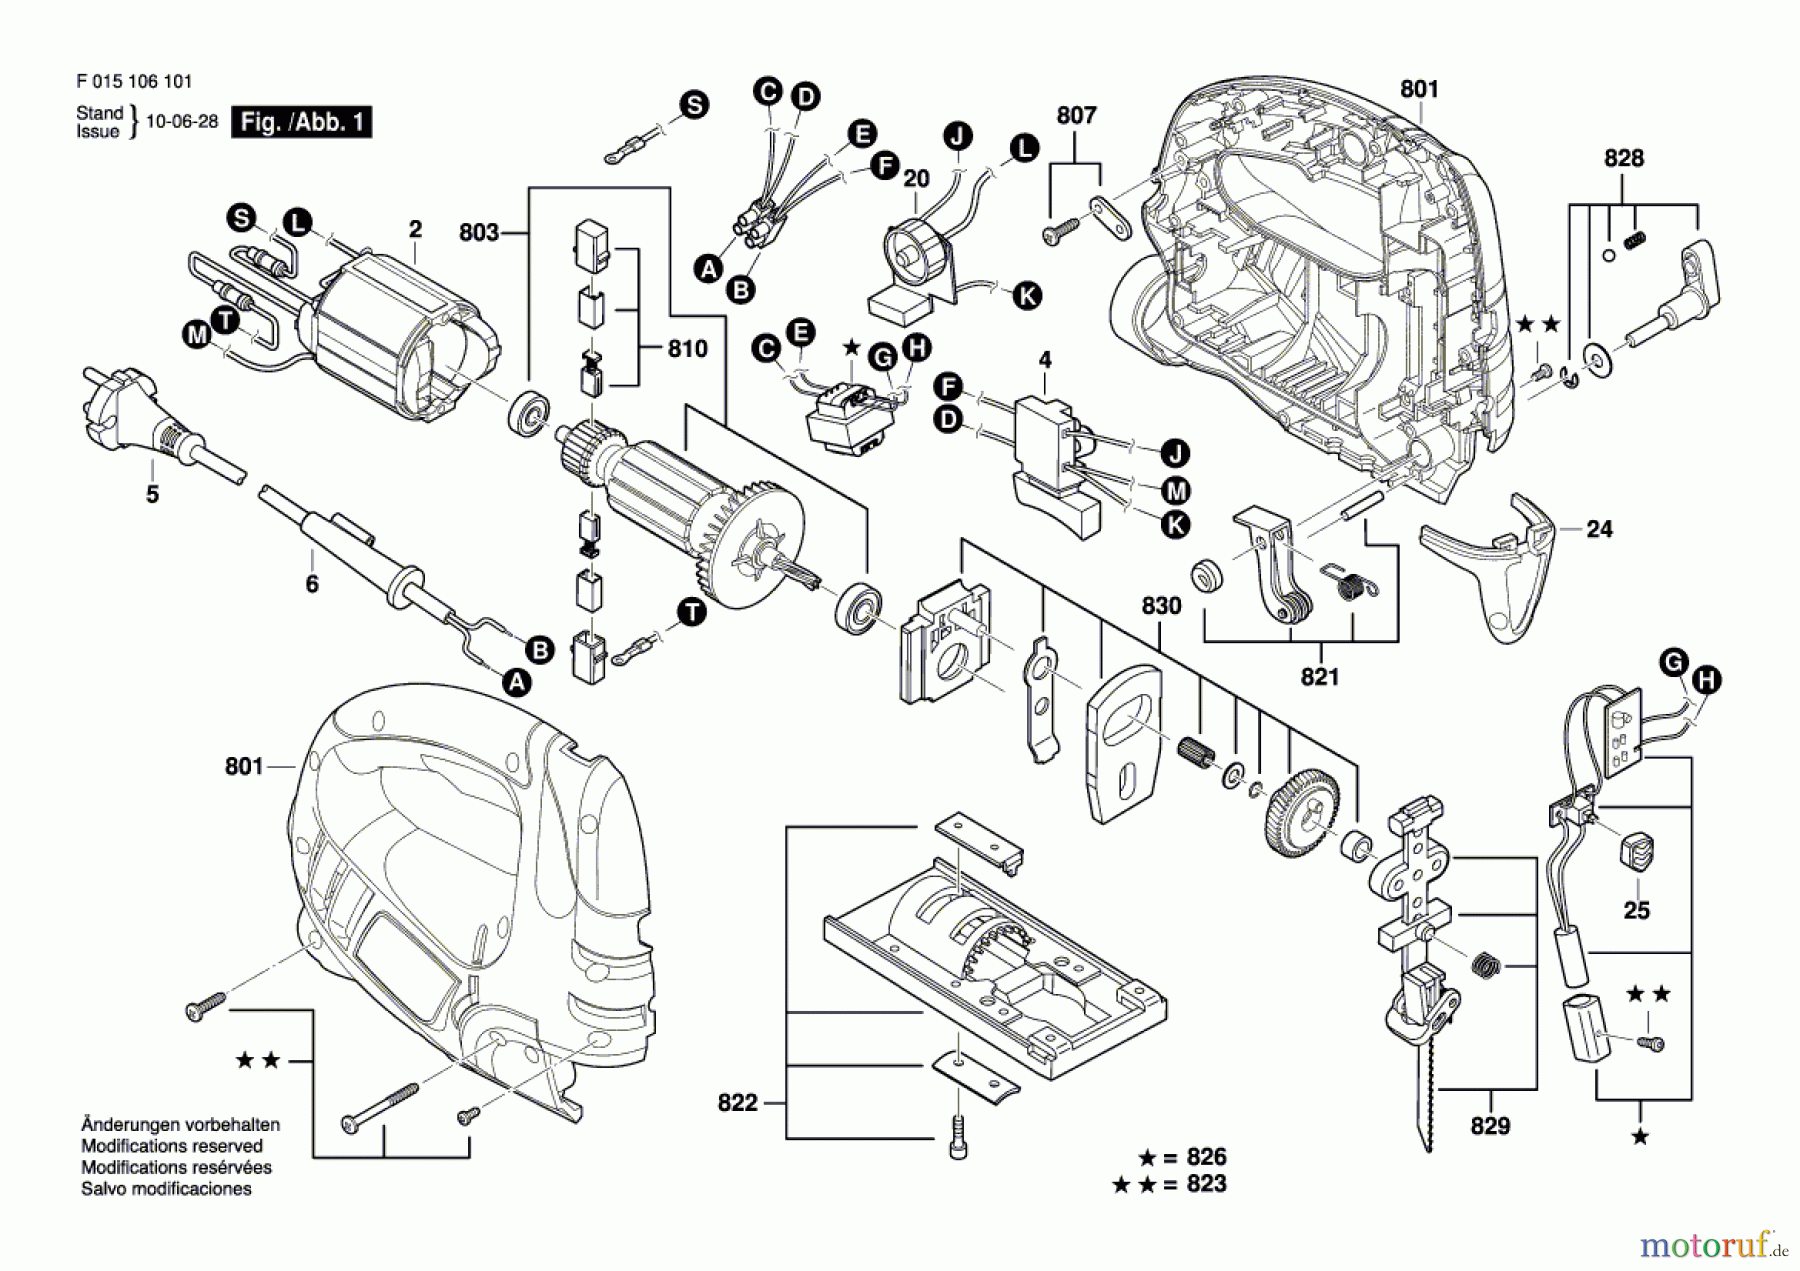  Bosch Werkzeug Stichsäge 1061 Seite 1